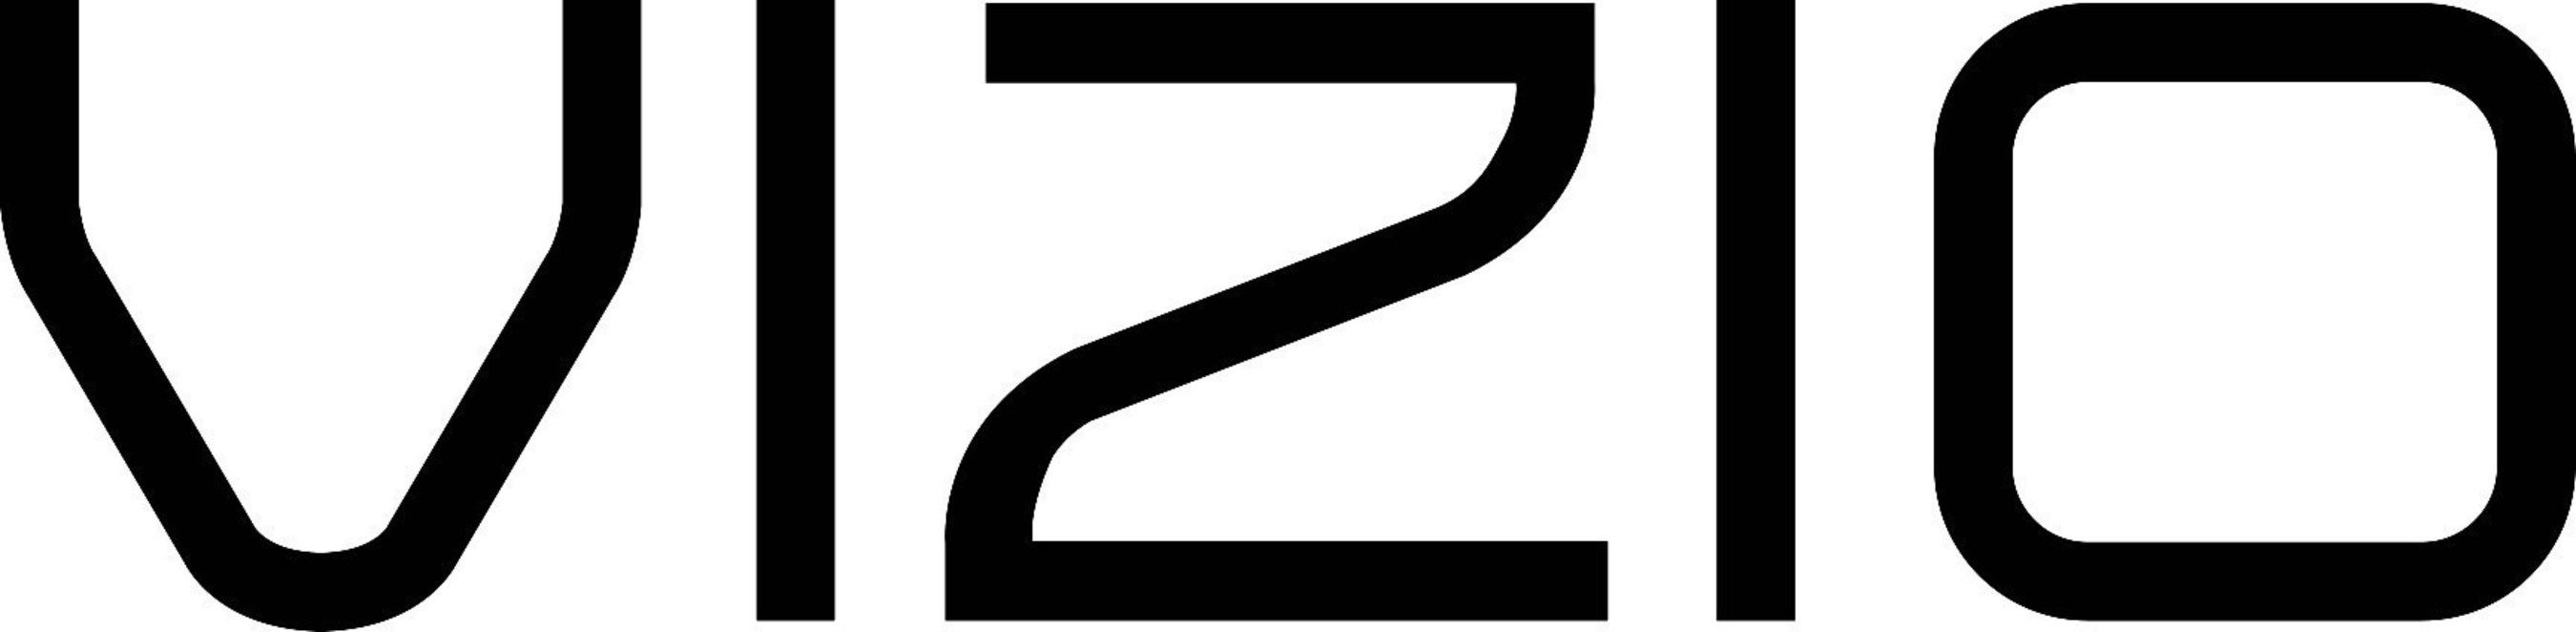 Vizio company logo